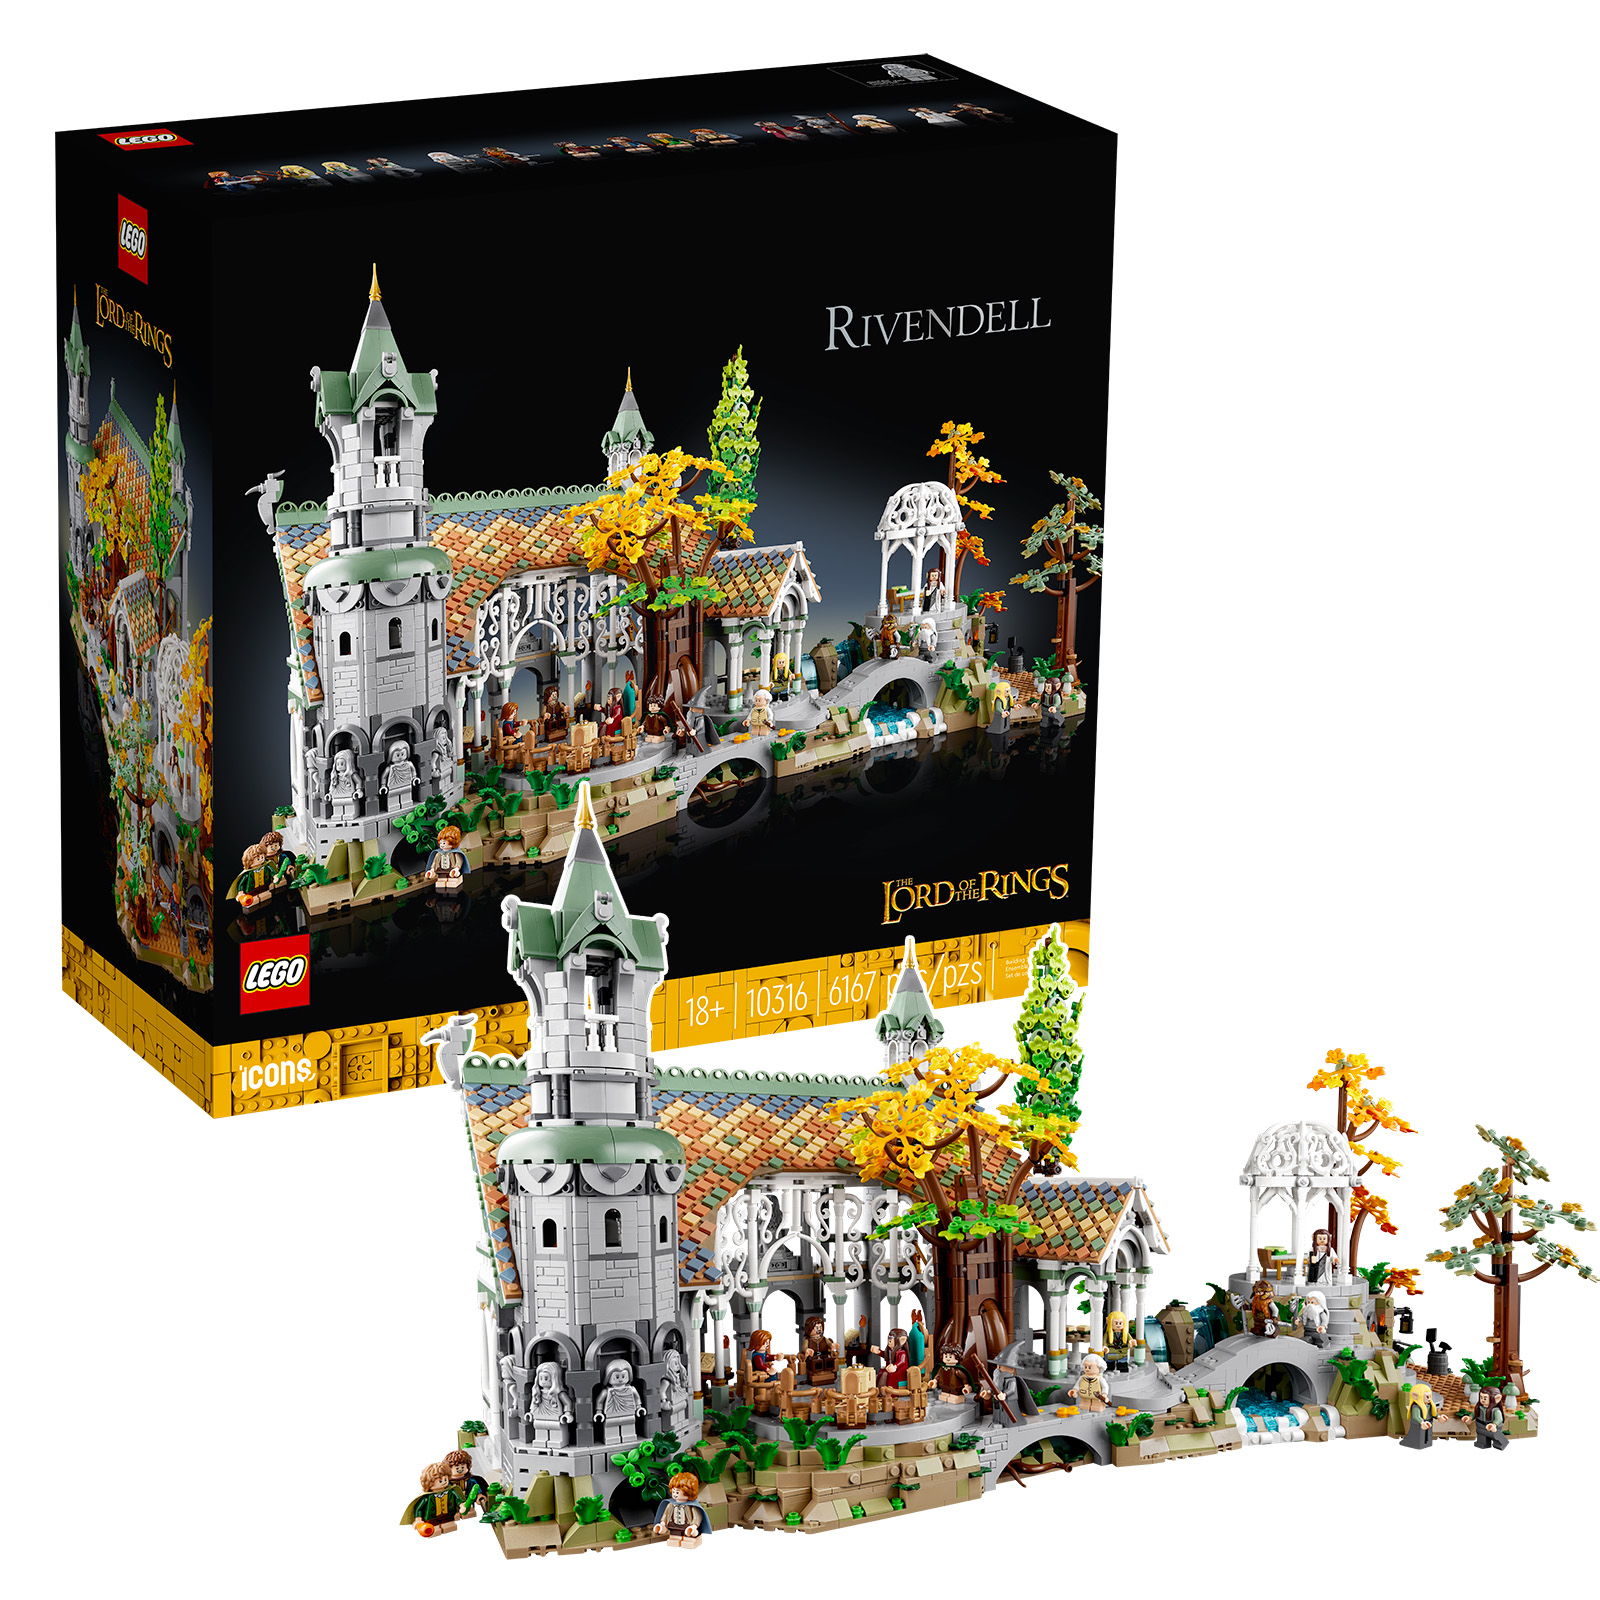 Lego Seigneur des Anneaux - Fondcombe (10316)